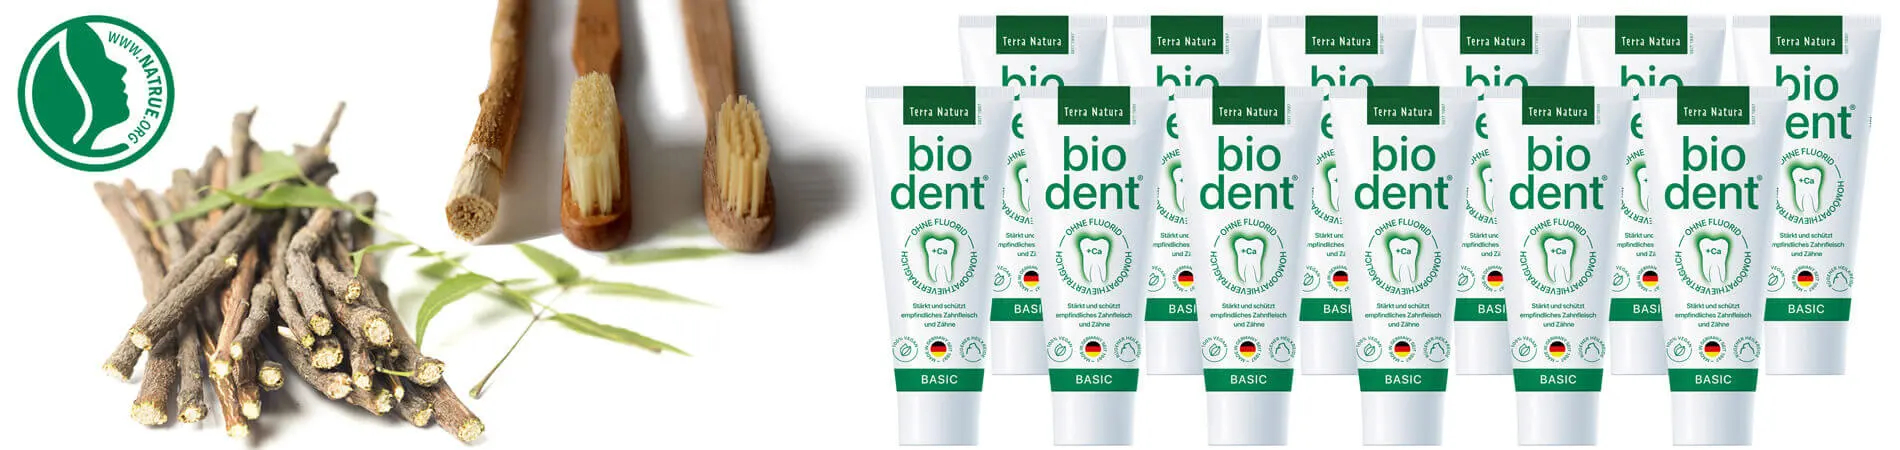 Biodent Basic Pasta de dientes sin fluor comprar Bio dent...